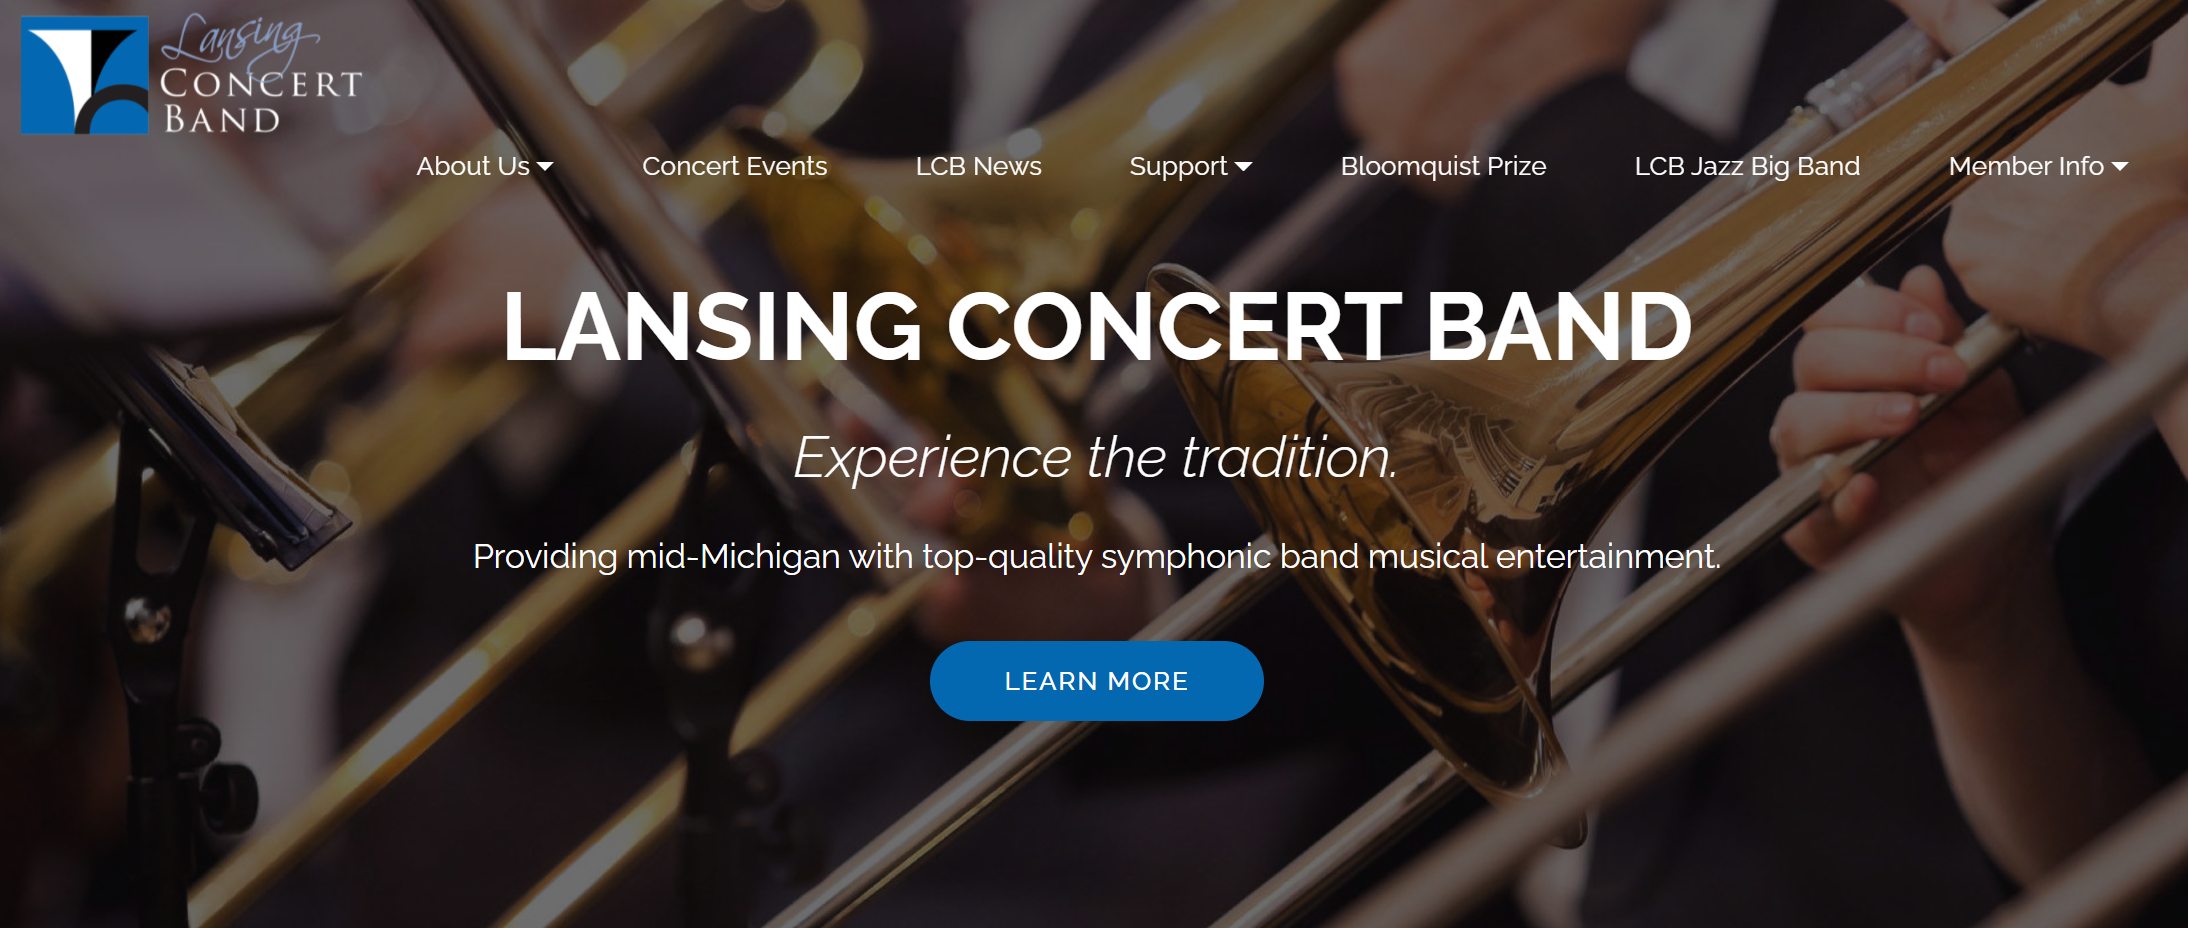 Lansing Concert Band website 2020 - visit lansingconcertband.org to view site design